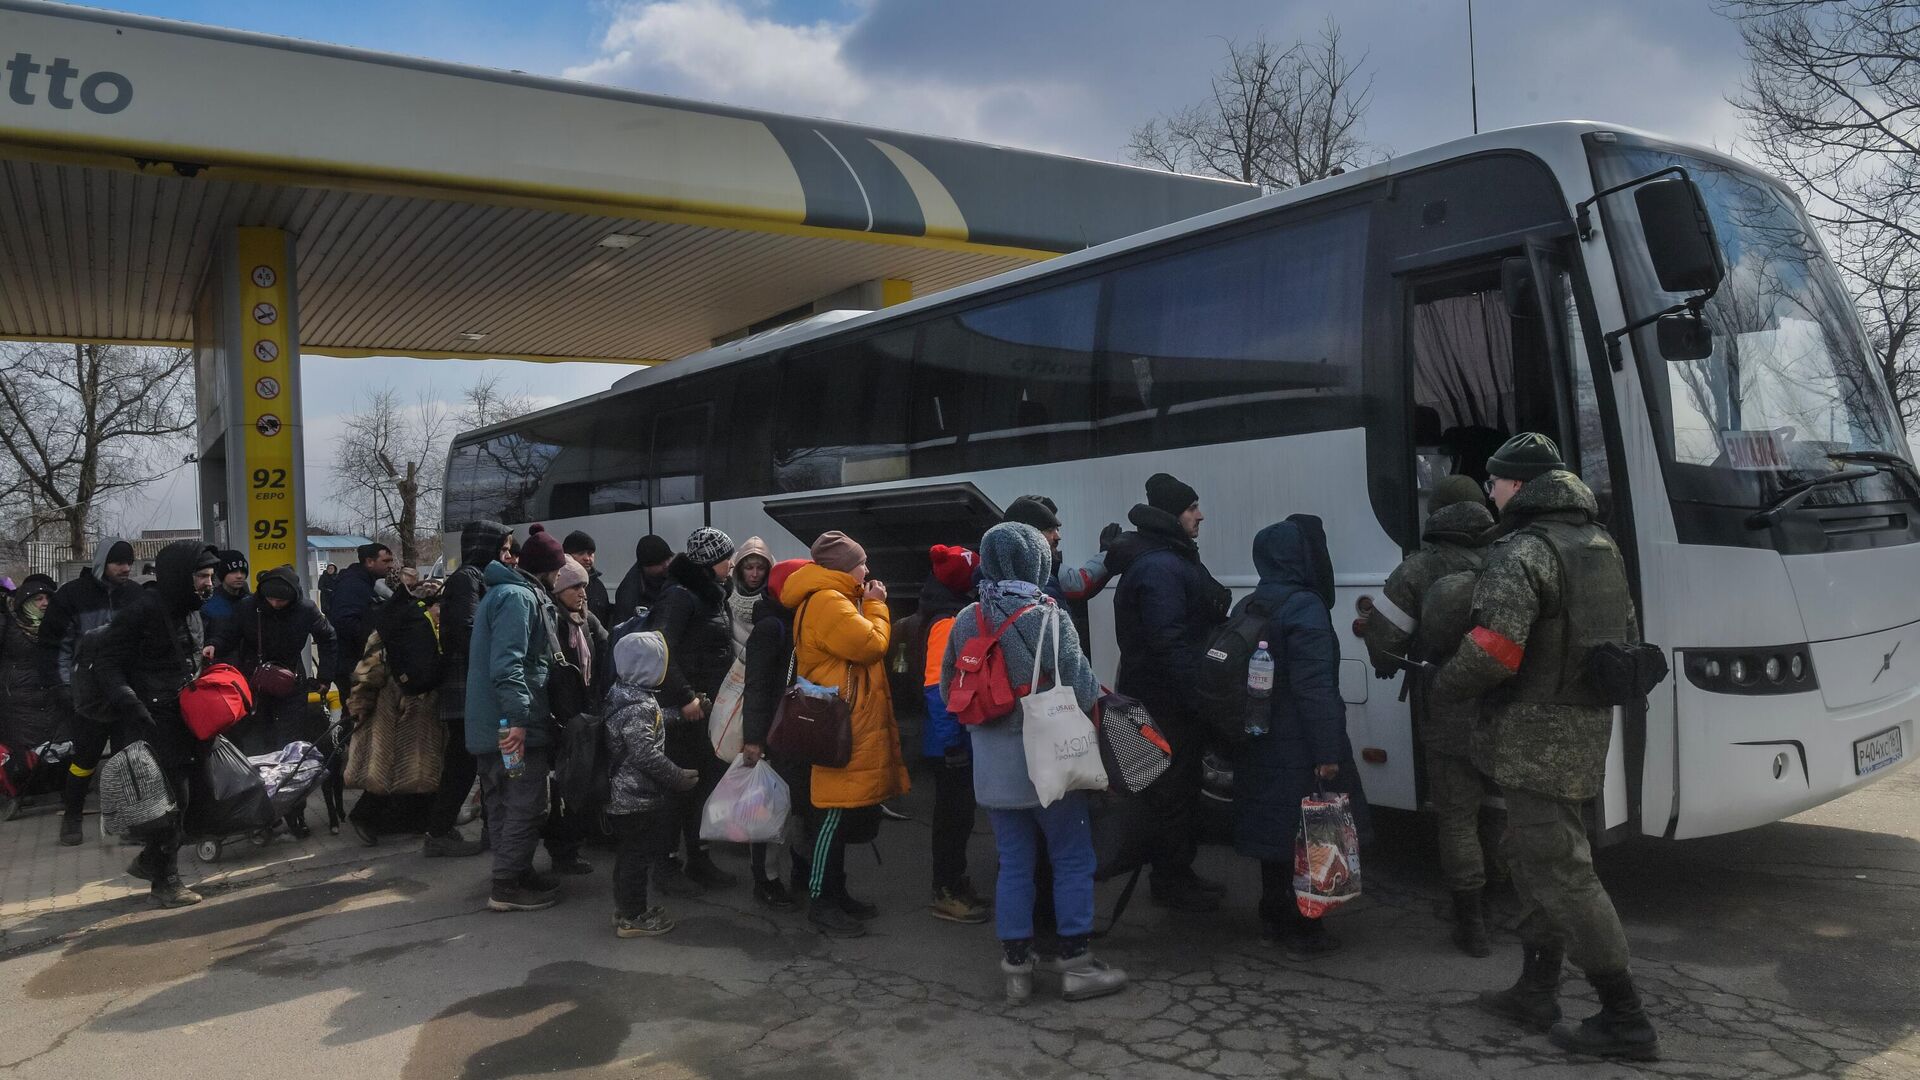 Беженцы готовятся к посадке в автобус на Запорожском шоссе в Мариуполе - РИА Новости, 1920, 20.03.2022